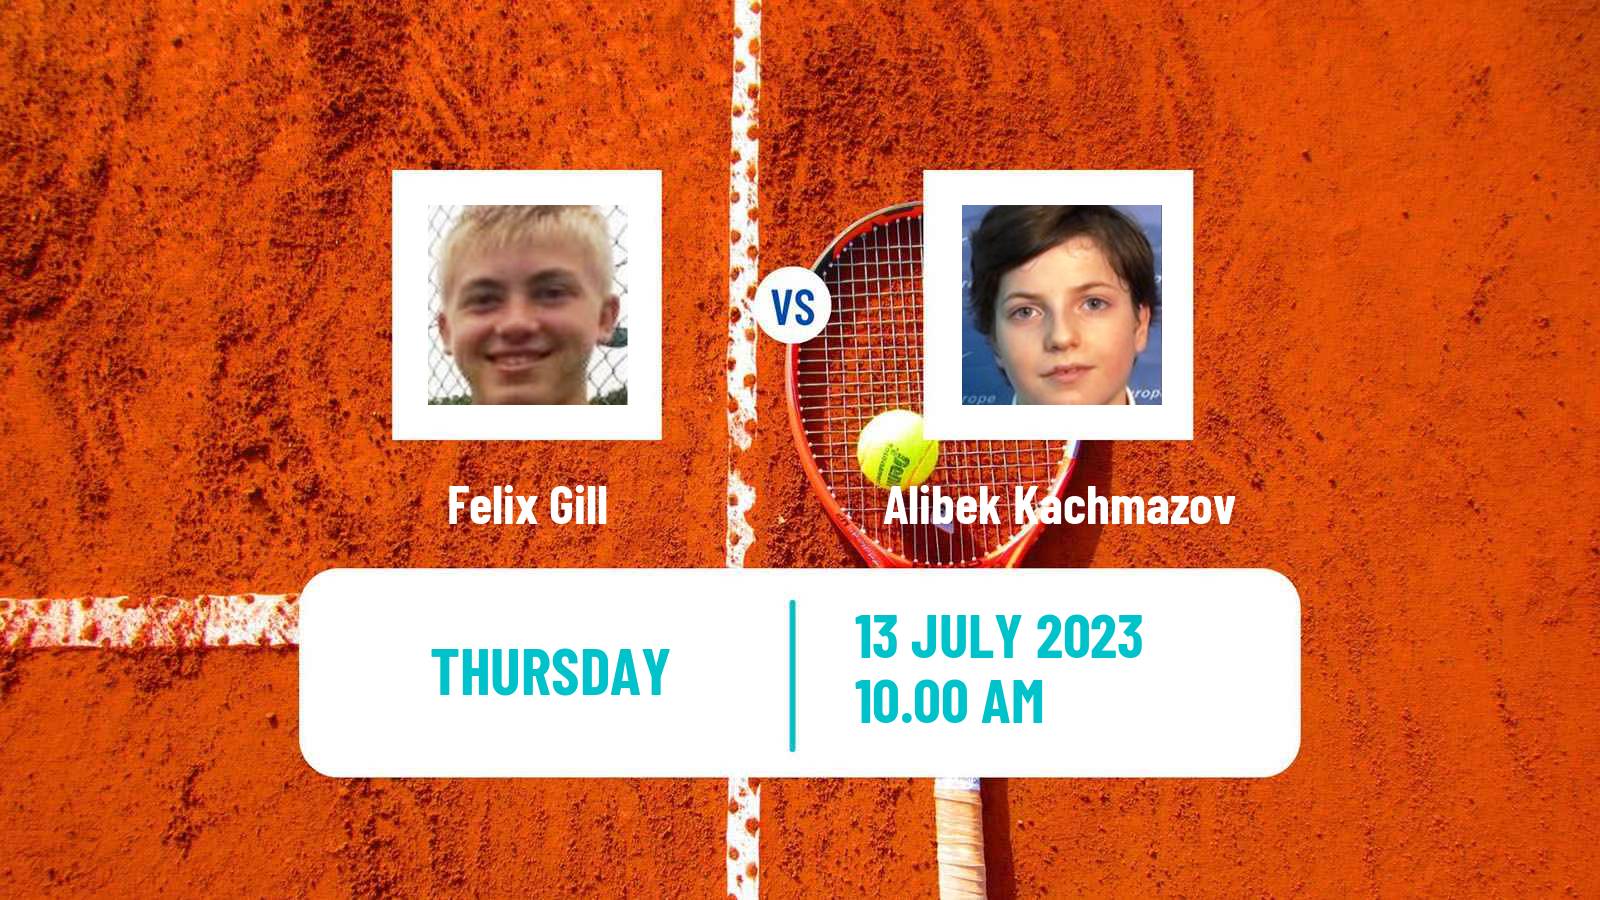 Tennis ITF M25 Roda De Bara Men Felix Gill - Alibek Kachmazov